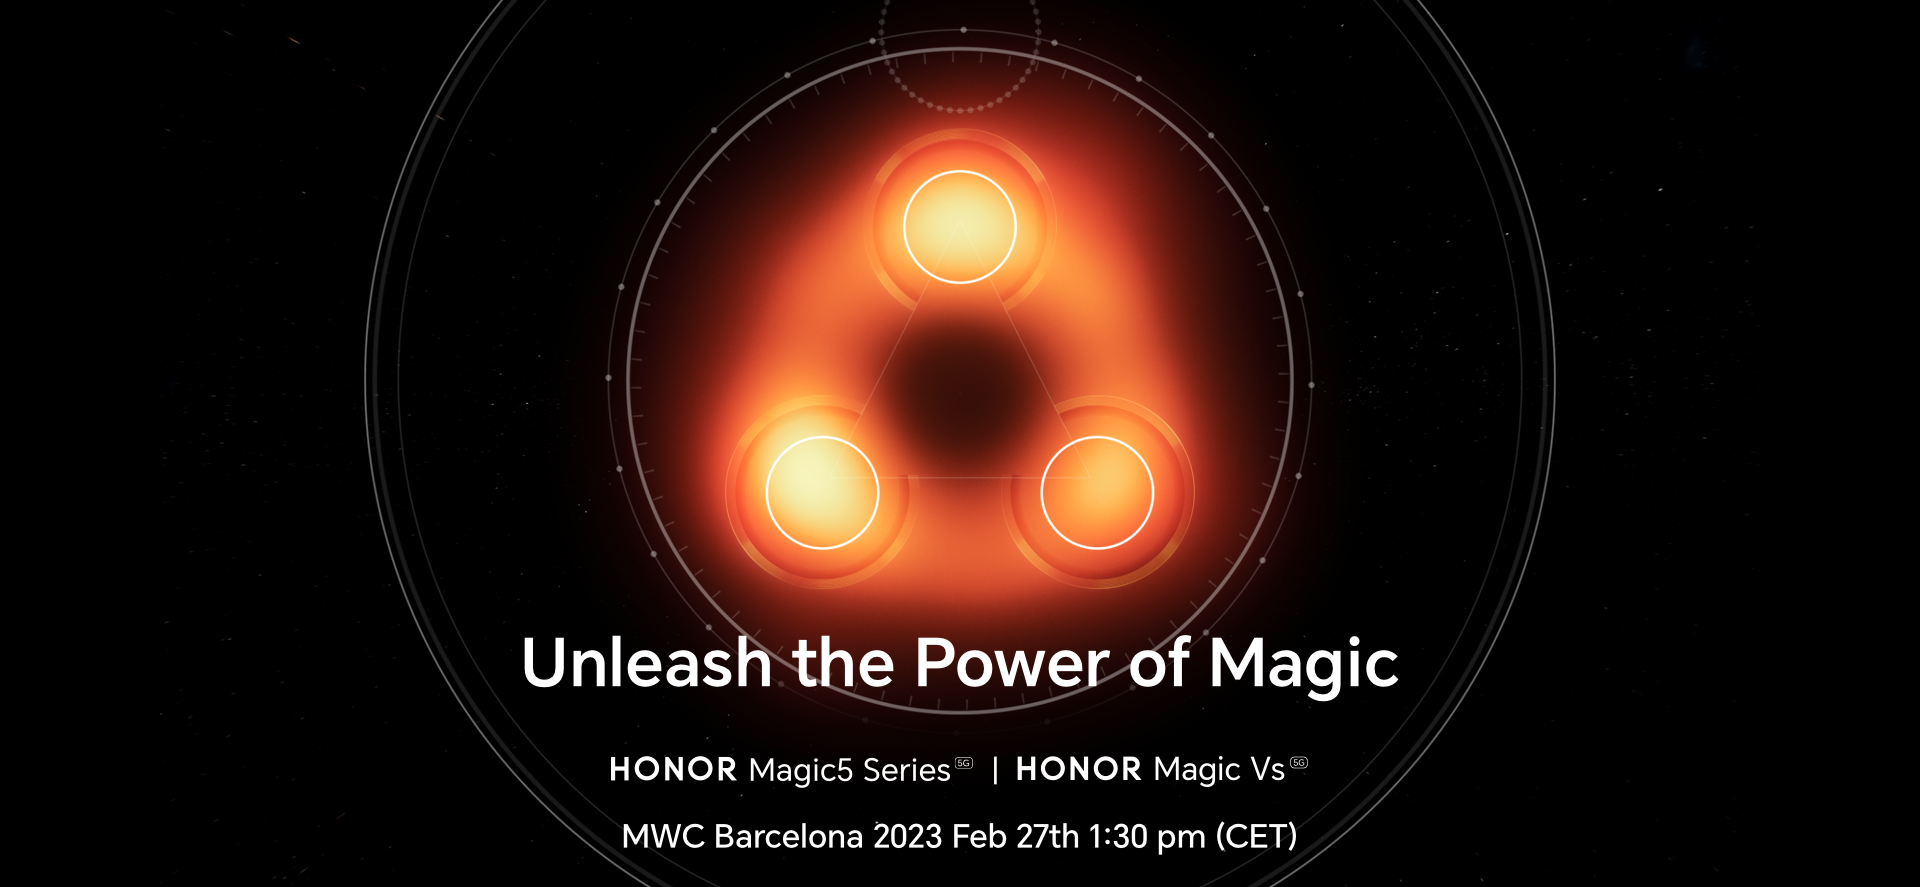 To już oficjalne: Honor pokaże serię Magic 5 oraz składany smartfon Magic Vs na targach MWC 2023, które odbędą się 27 lutego